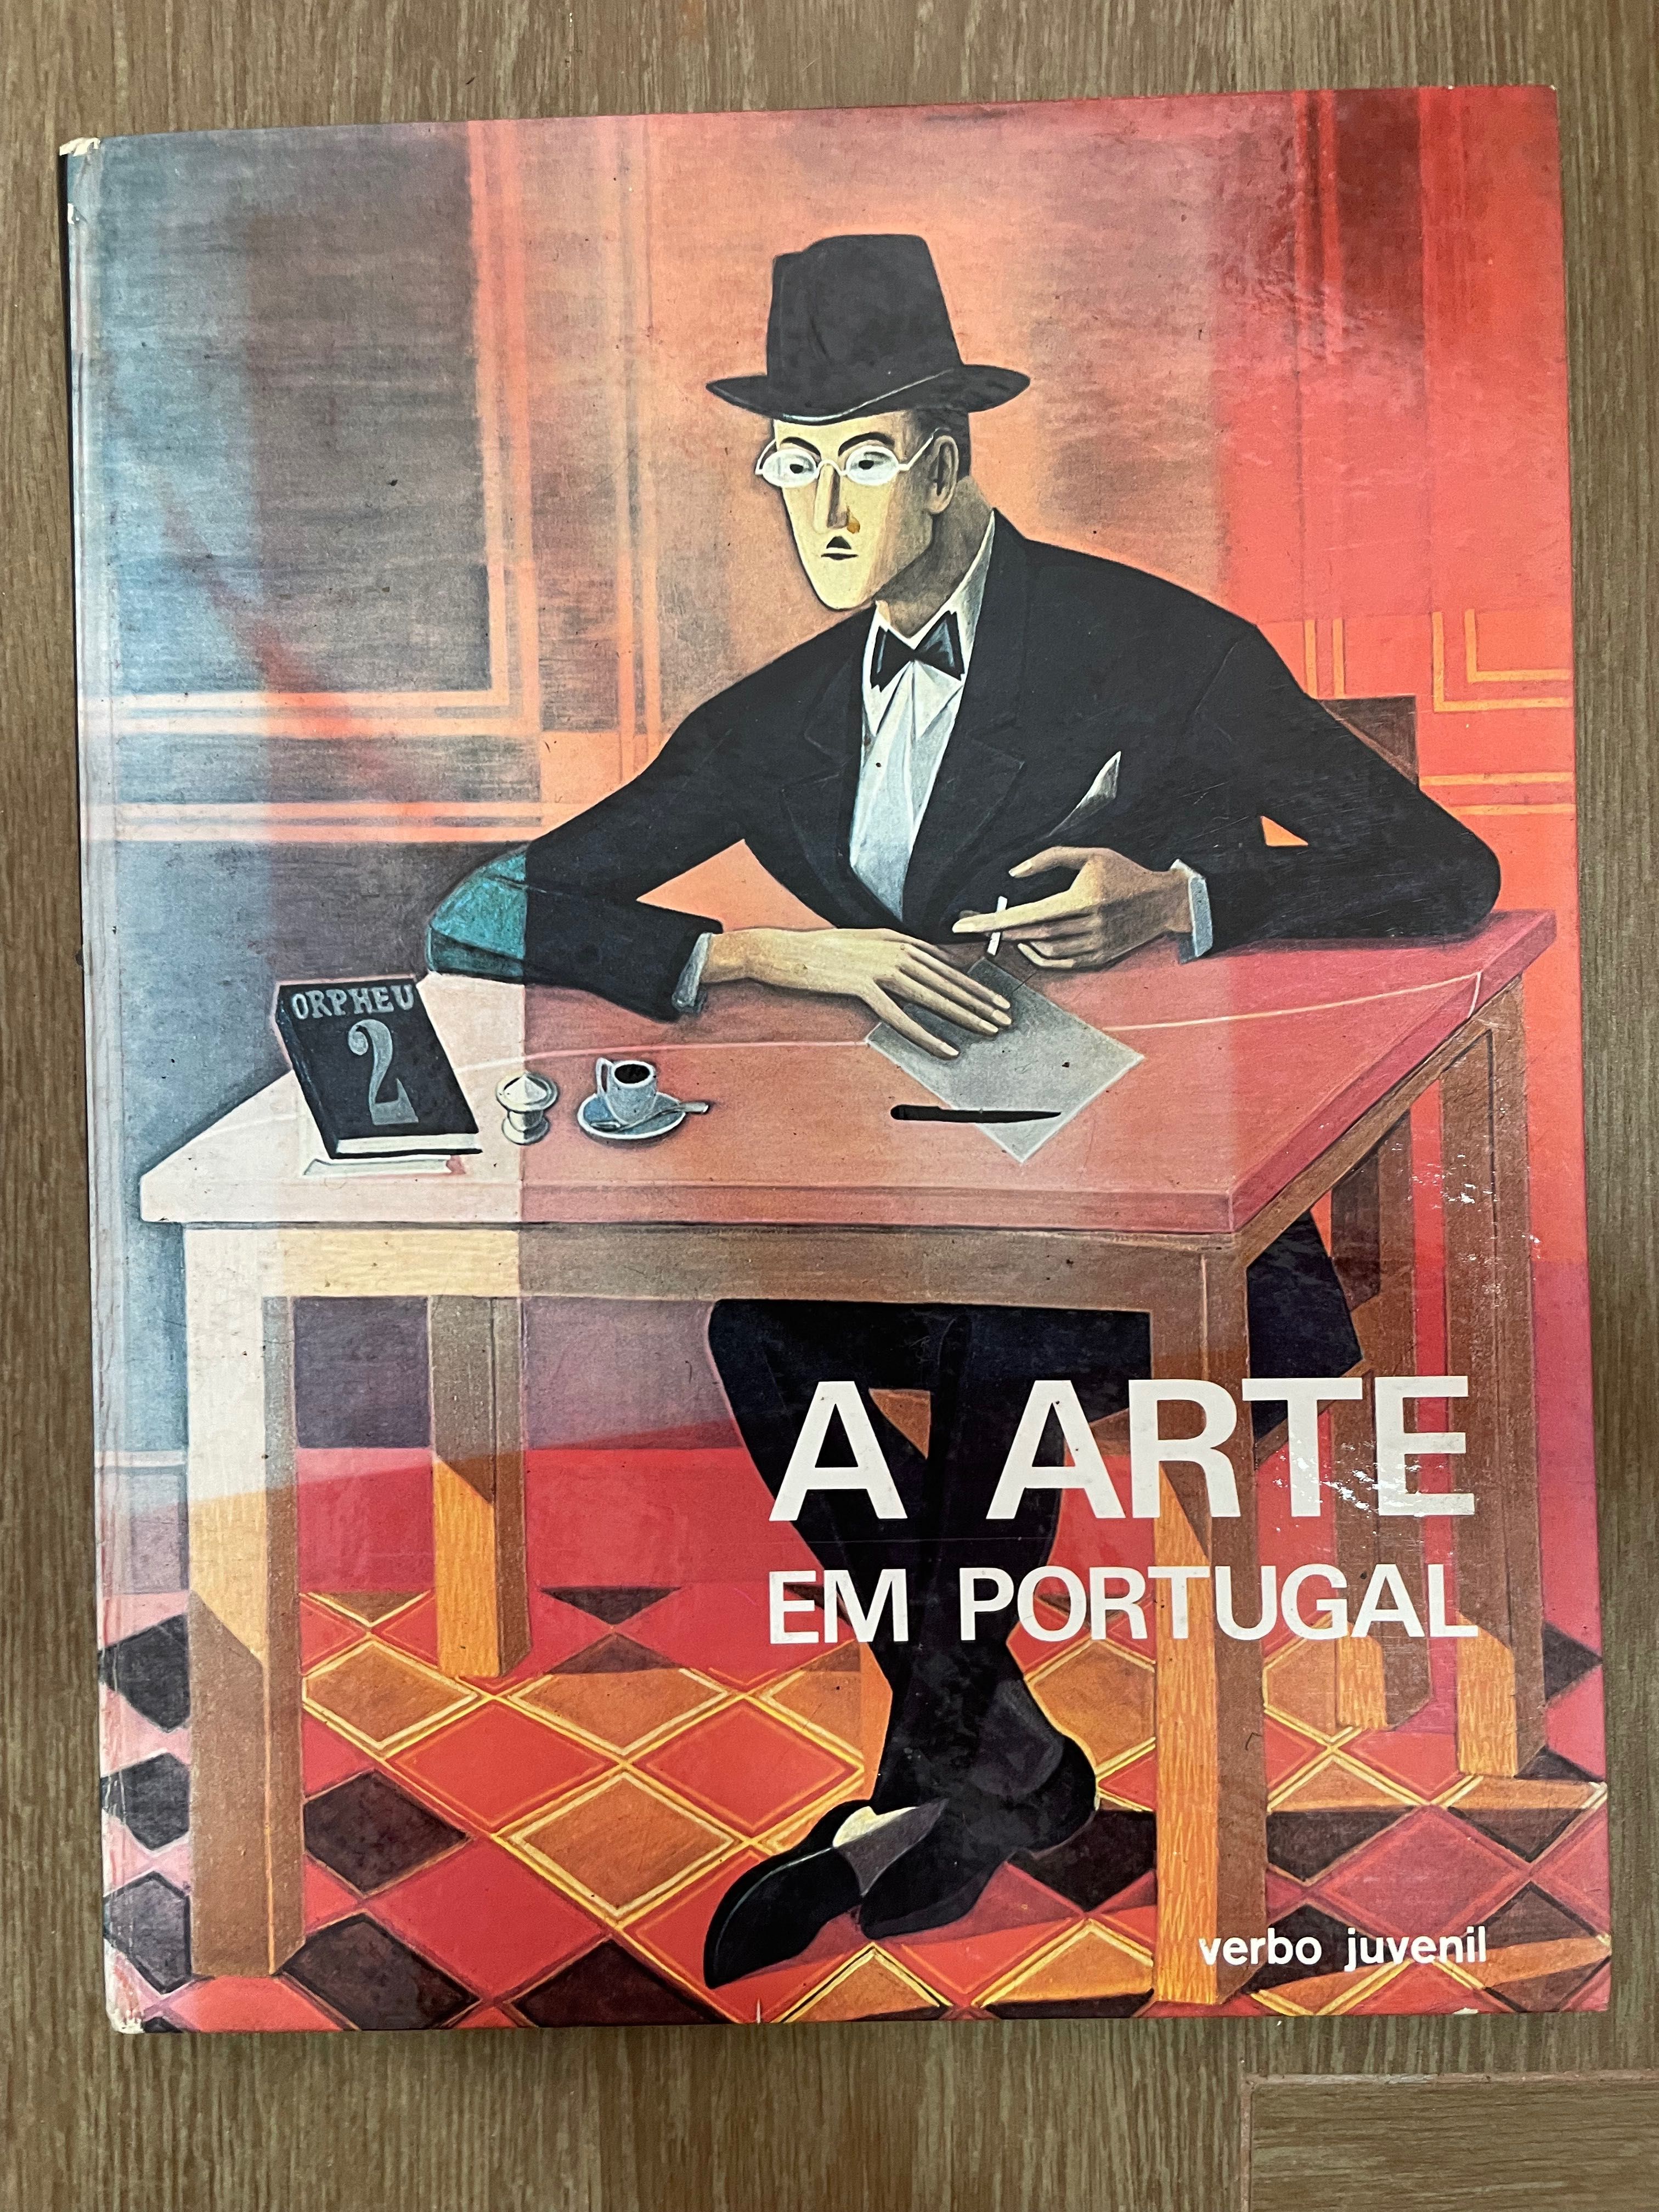 A Arte em Portugal - Florido de Vasconcelos - 2 volumes (p. grátis)